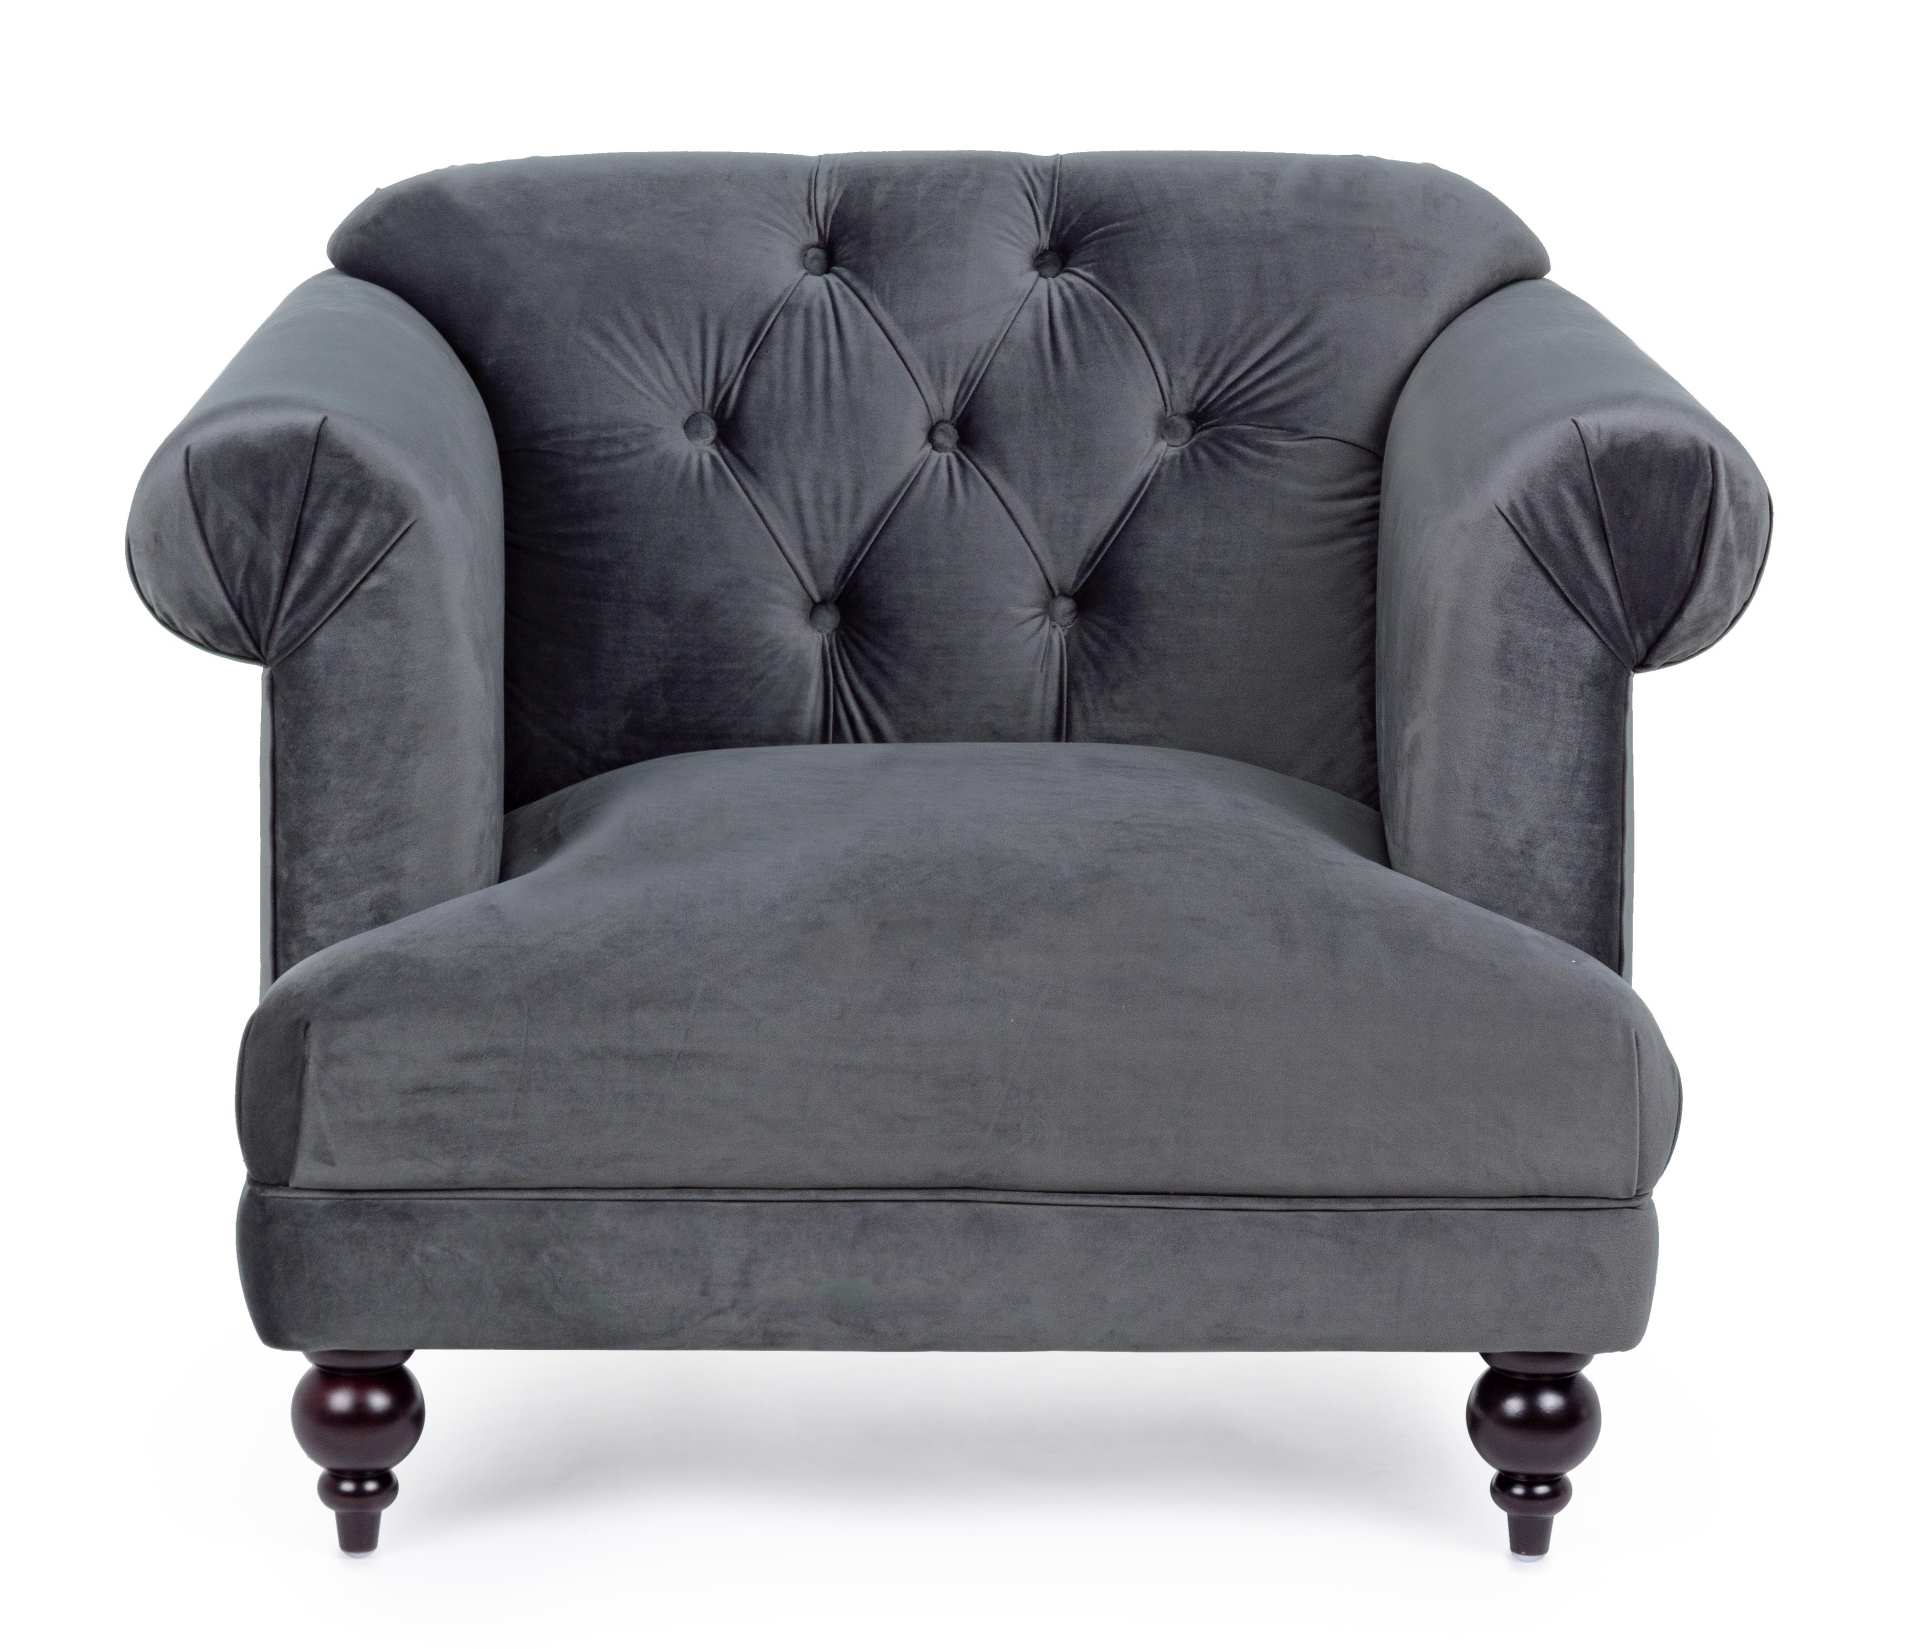 Der Sessel Blossom überzeugt mit seinem klassischen Design. Gefertigt wurde er aus Stoff in Samt-Optik, welcher einen grauen Farbton besitzt. Das Gestell ist aus Kautschukholz und hat eine schwarze Farbe. Der Sessel besitzt eine Sitzhöhe von 44 cm. Die Br